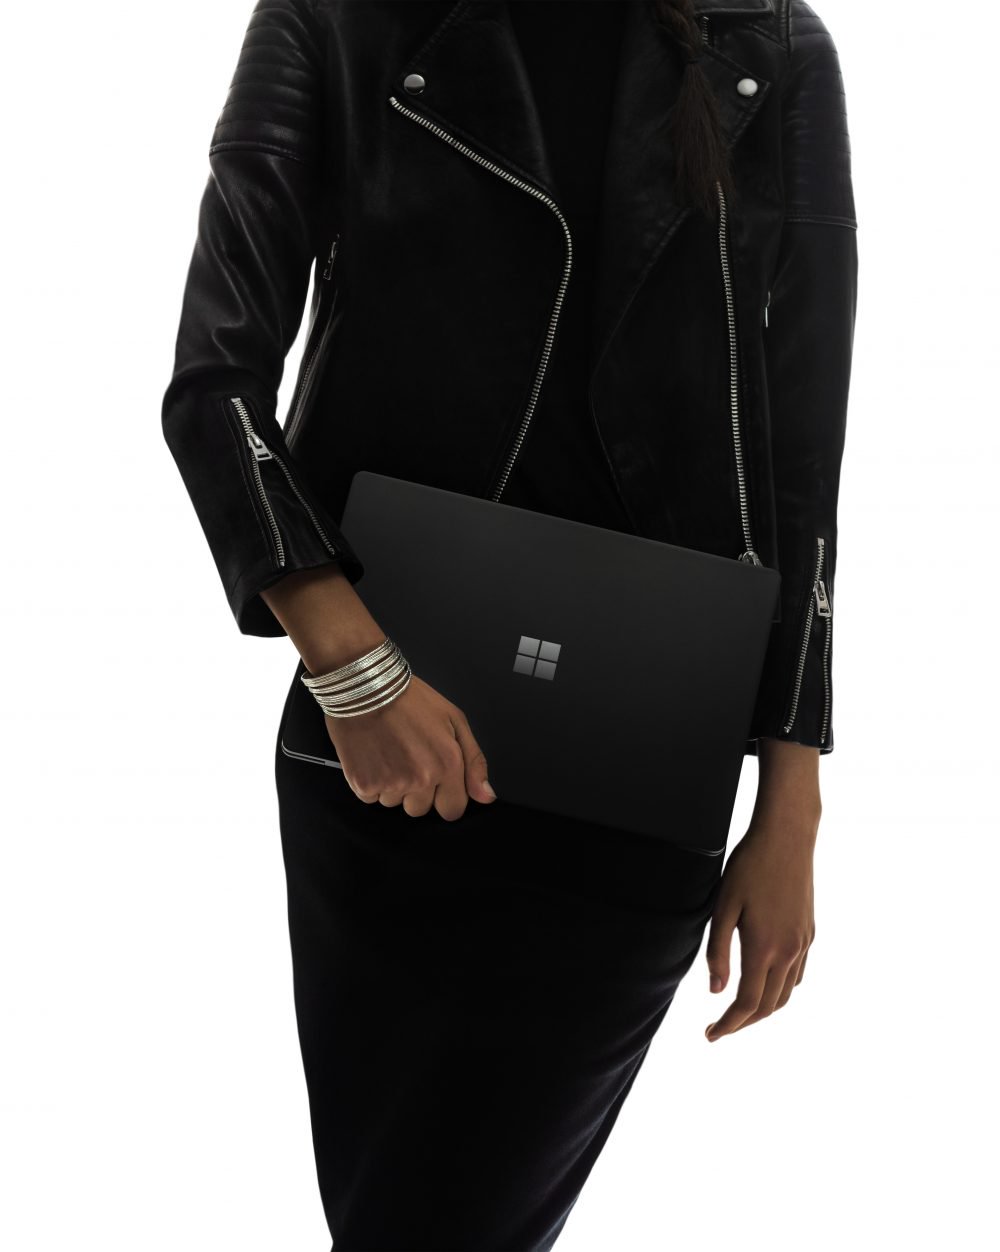 Kényeztesse magát! A Microsoft Surface Laptop 2 most hatalmas, 300 dolláros kedvezménnyel kapható